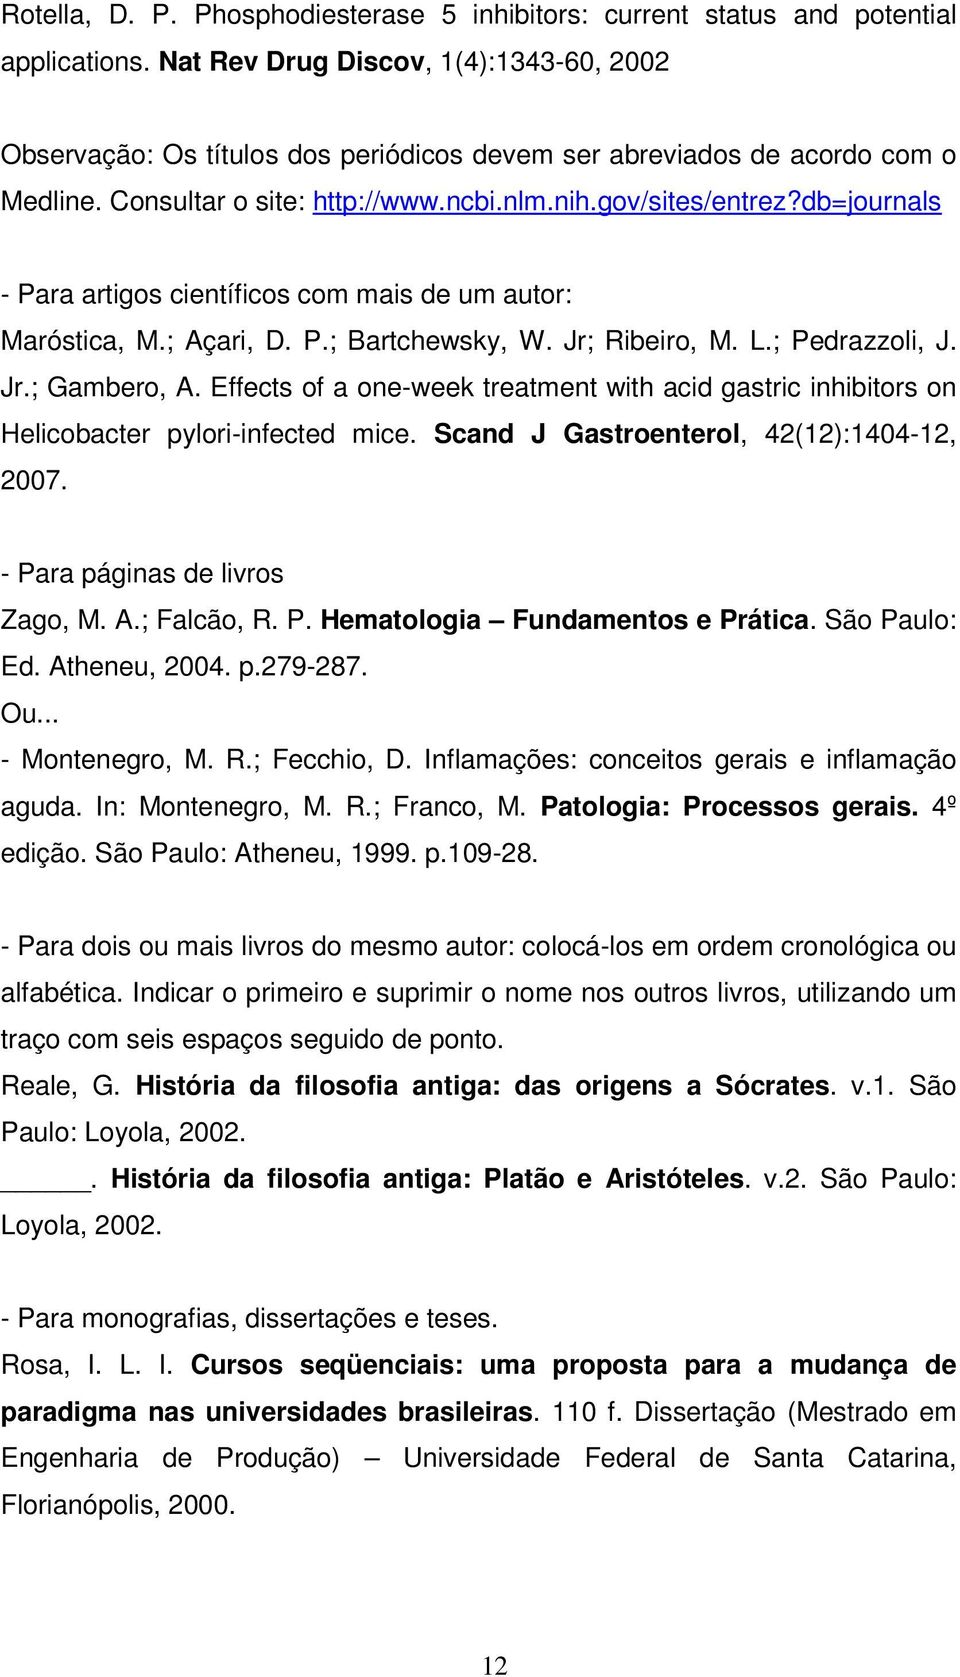 db=journals - Para artigos científicos com mais de um autor: Maróstica, M.; Açari, D. P.; Bartchewsky, W. Jr; Ribeiro, M. L.; Pedrazzoli, J. Jr.; Gambero, A.